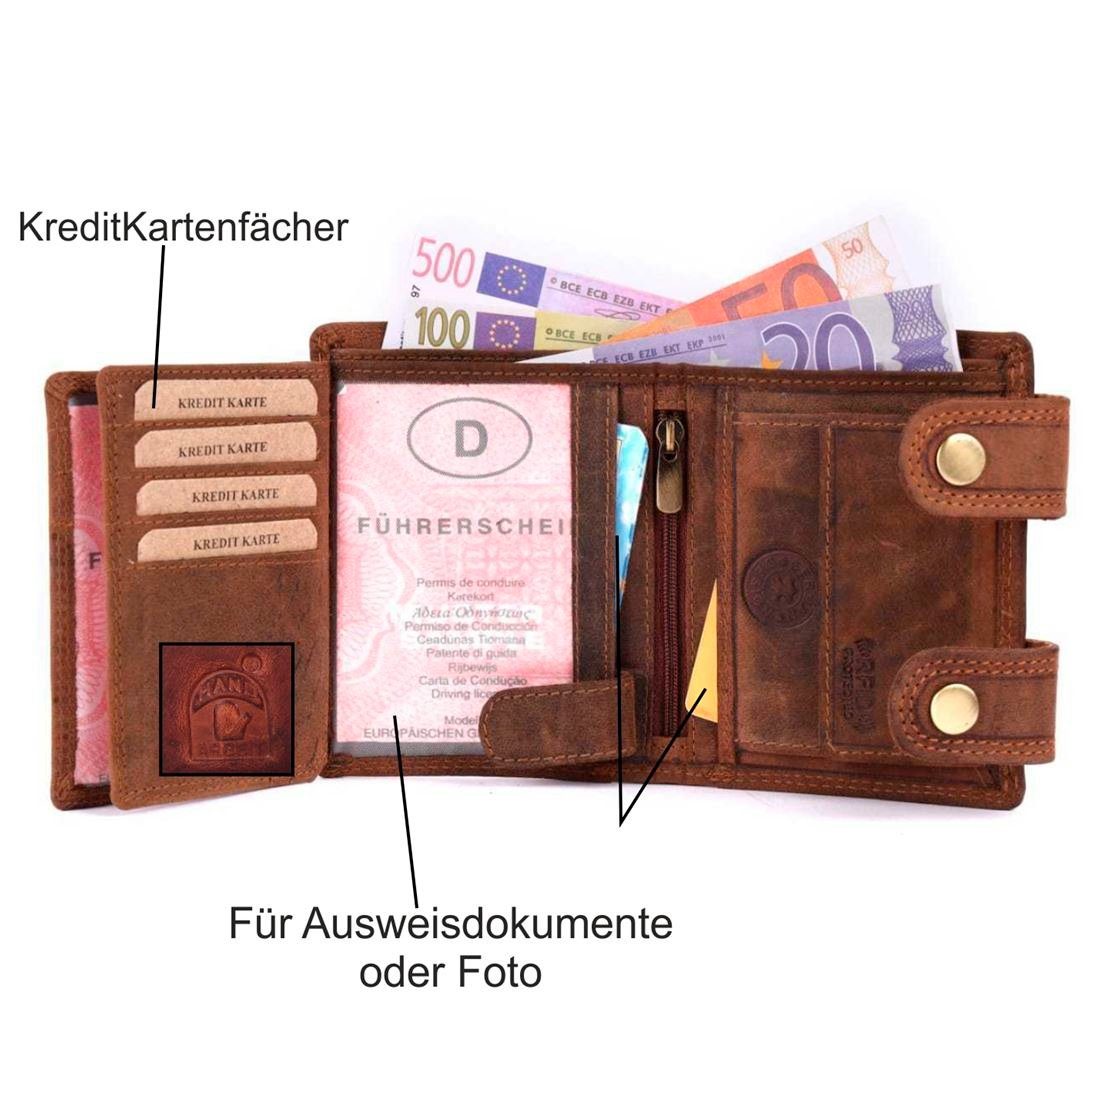 SHG mit Büffelleder Portemonnaie, Münzfach Geldbörse Leder Lederbörse Schutz mit Kette Herren Börse RFID